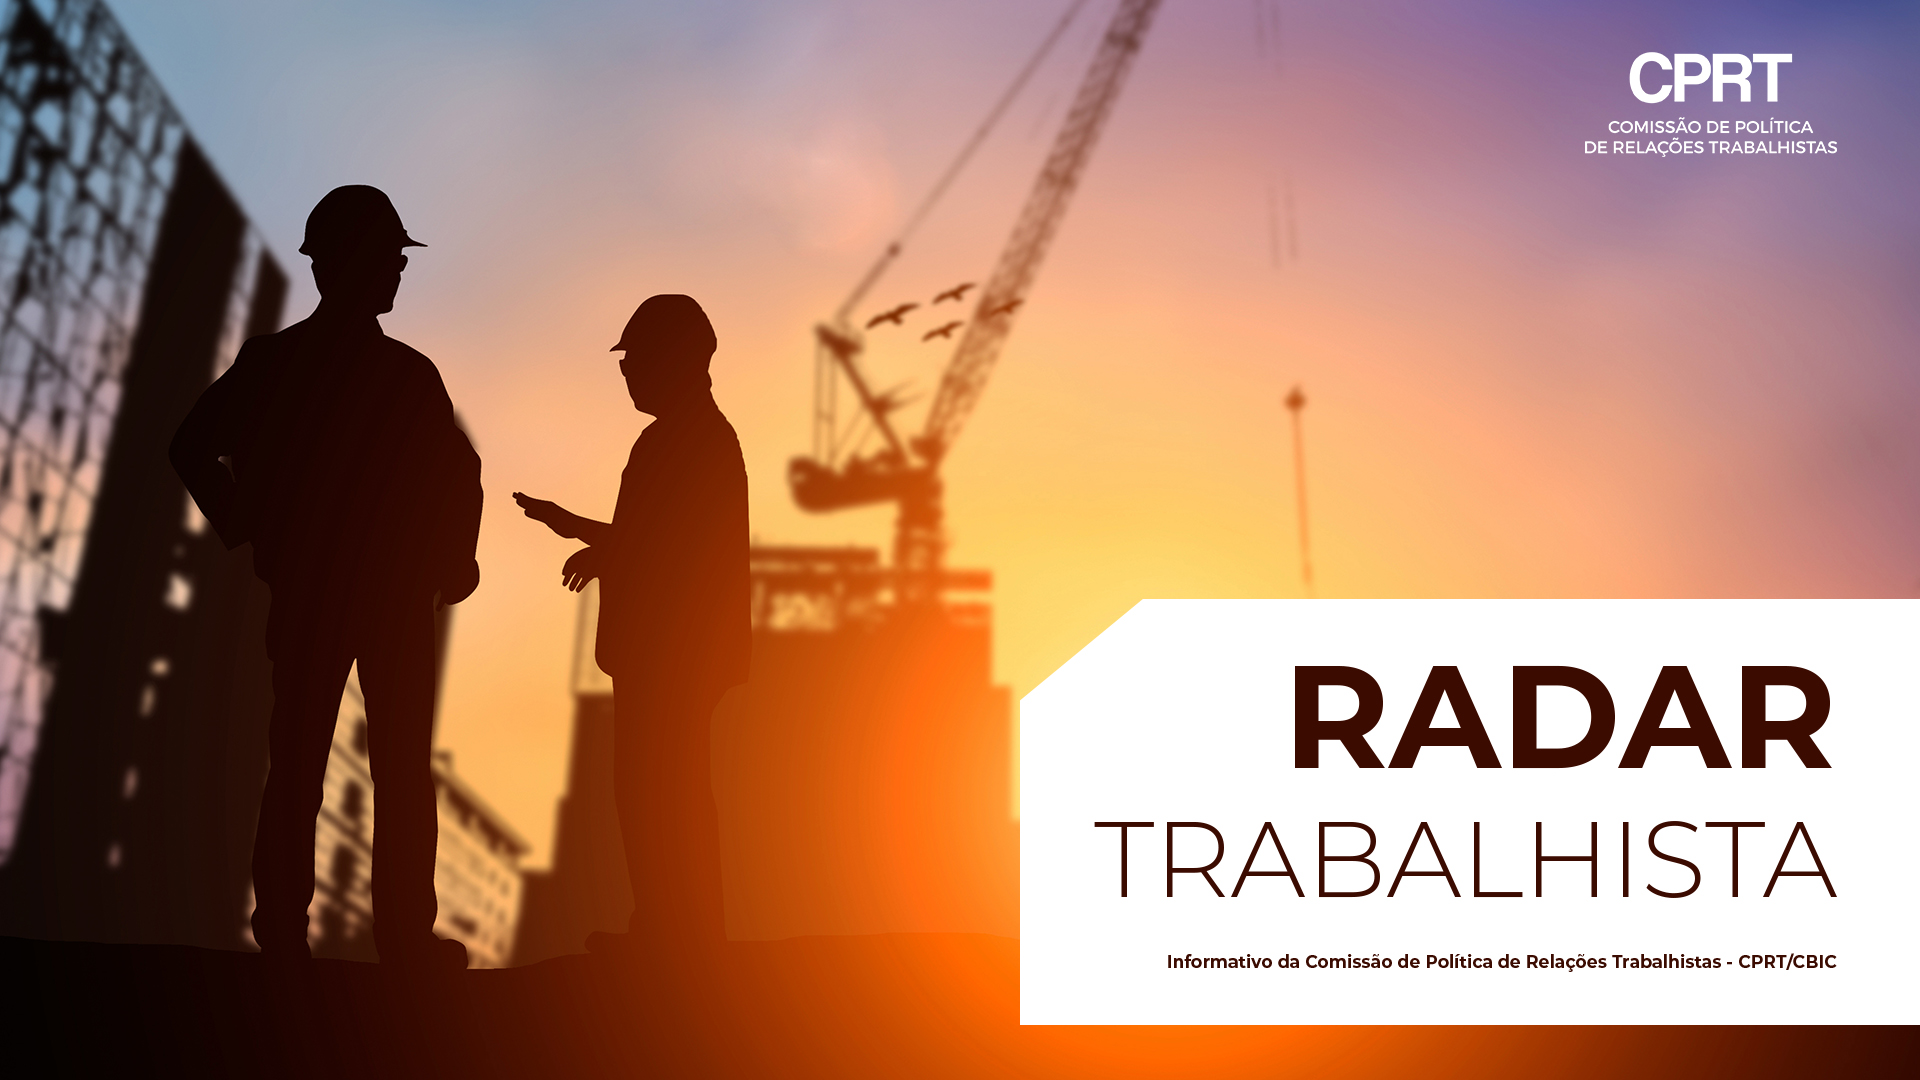 Radar Trabalhista: Empresas devem acessar relatório de transparência salarial